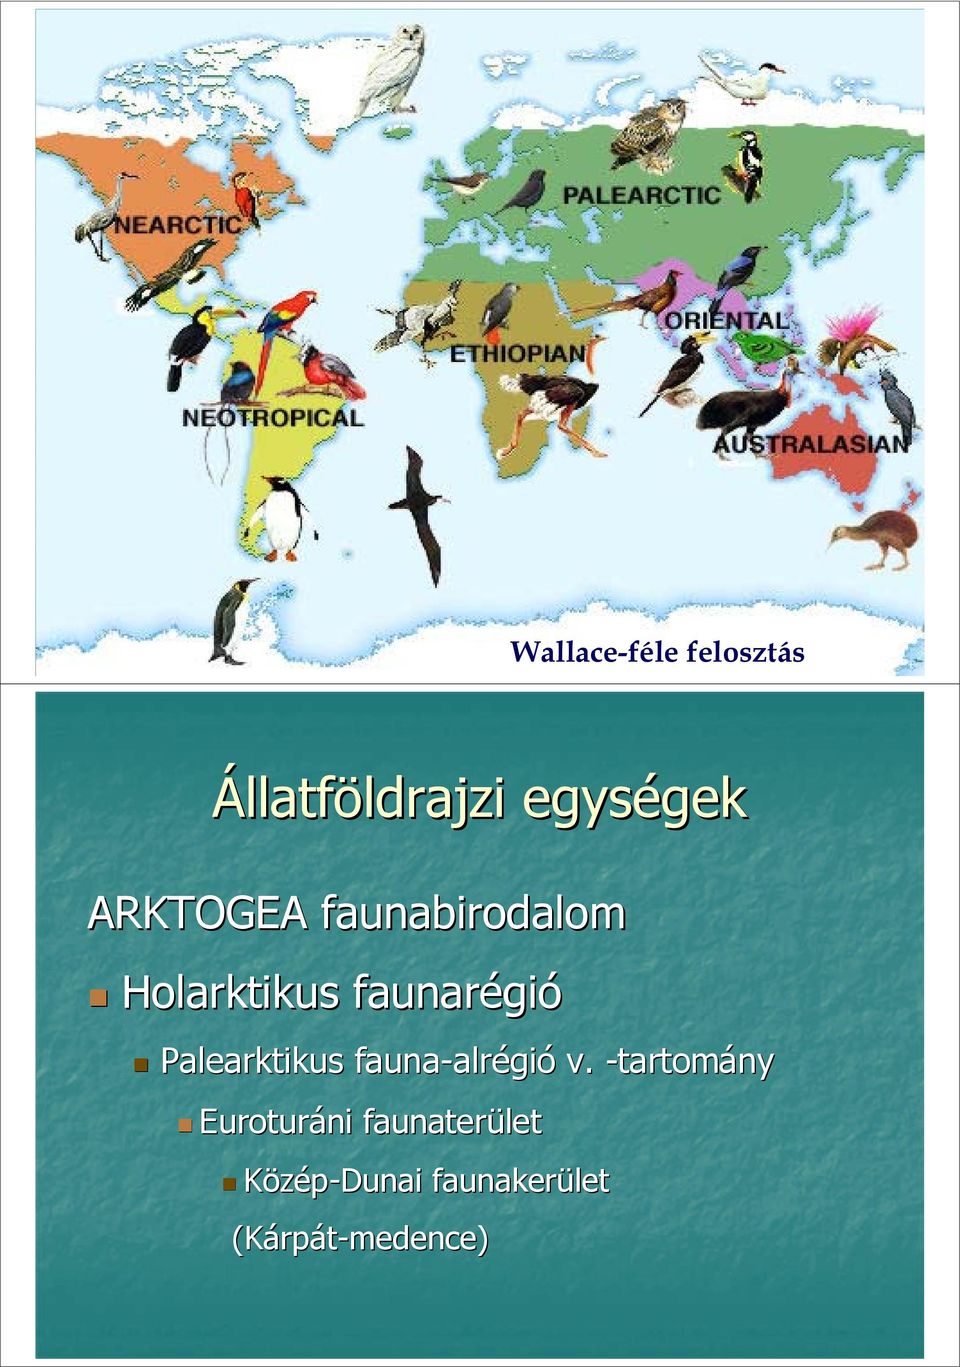 Palearktikus fauna-alrégió alrégió v.